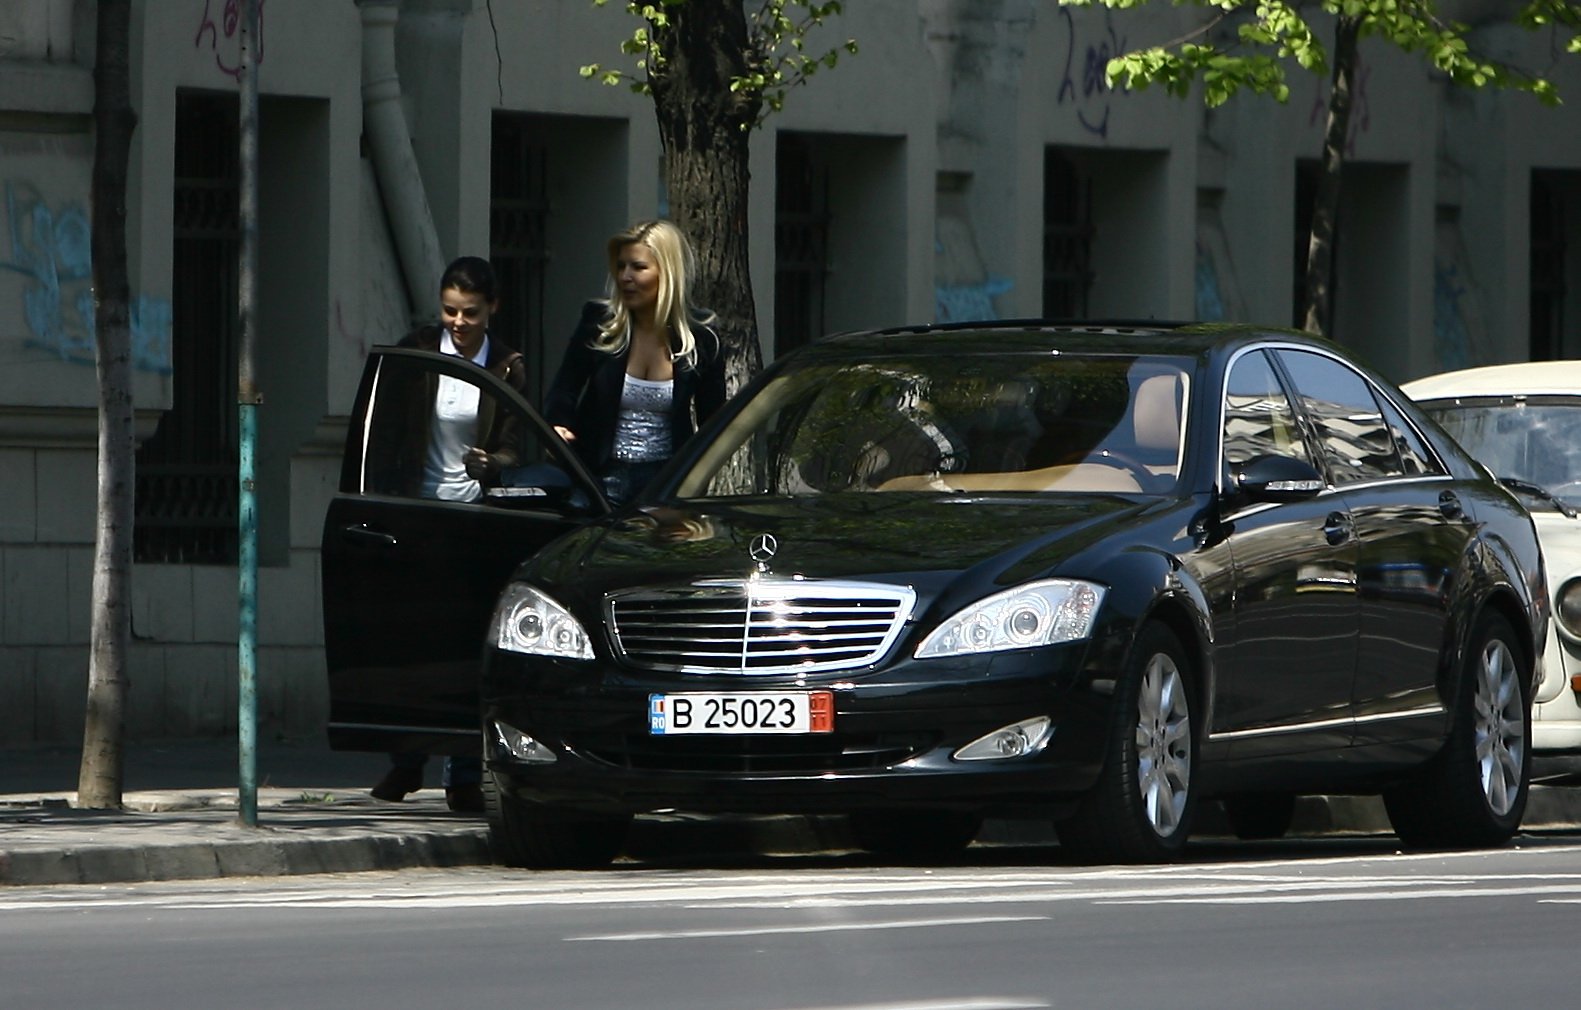  Vrei să conduci maşinile Elenei Udrea? Fiscul le scoate la vânzare